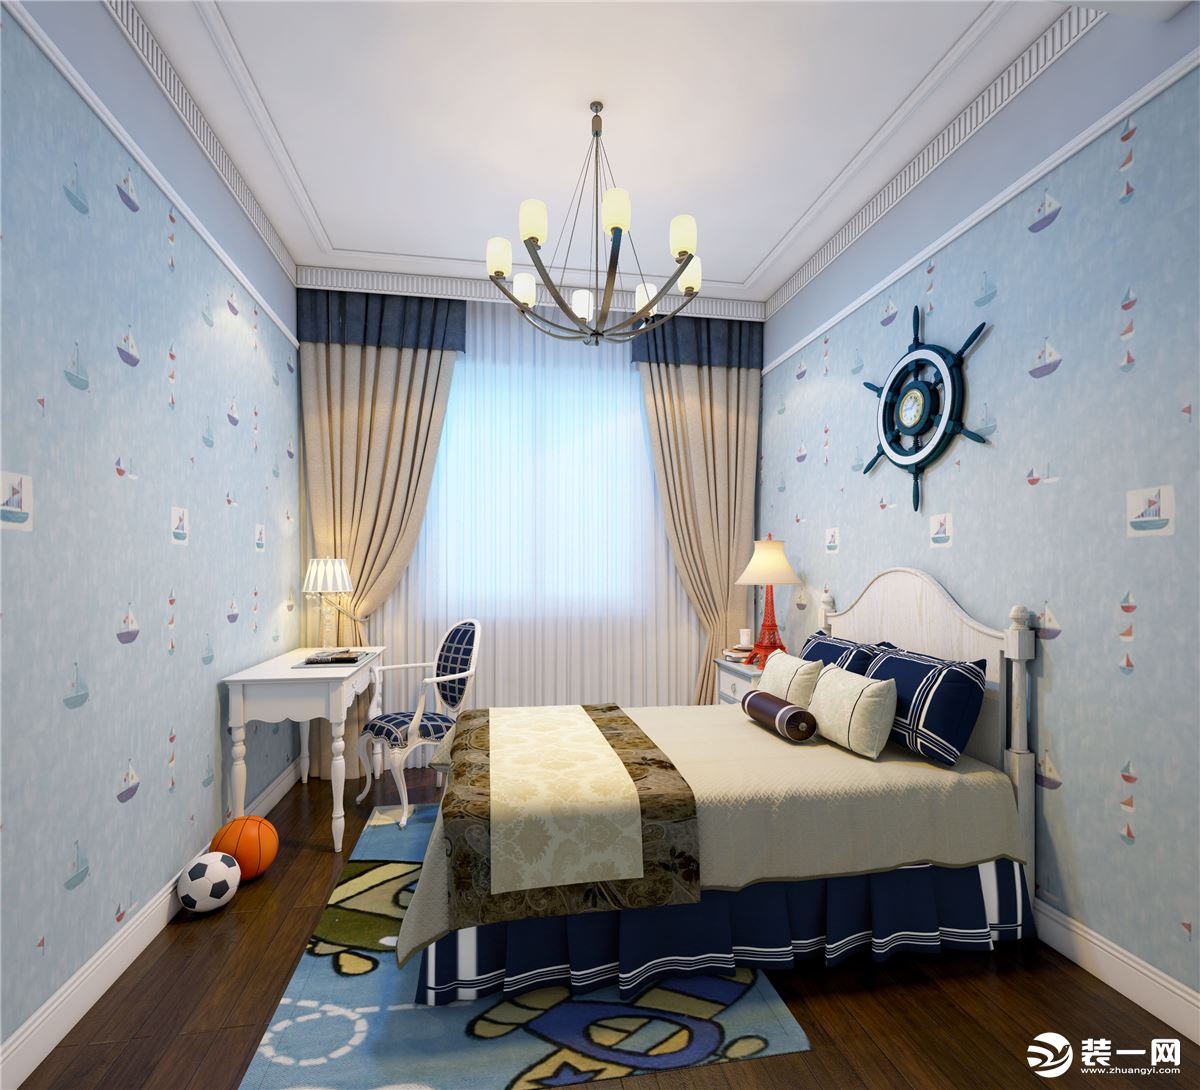 孩子房选择了蓝色系的一款水手主题壁纸，搭配了白色实木家具，整体空间清清爽爽、干干净净非常符合孩子房的